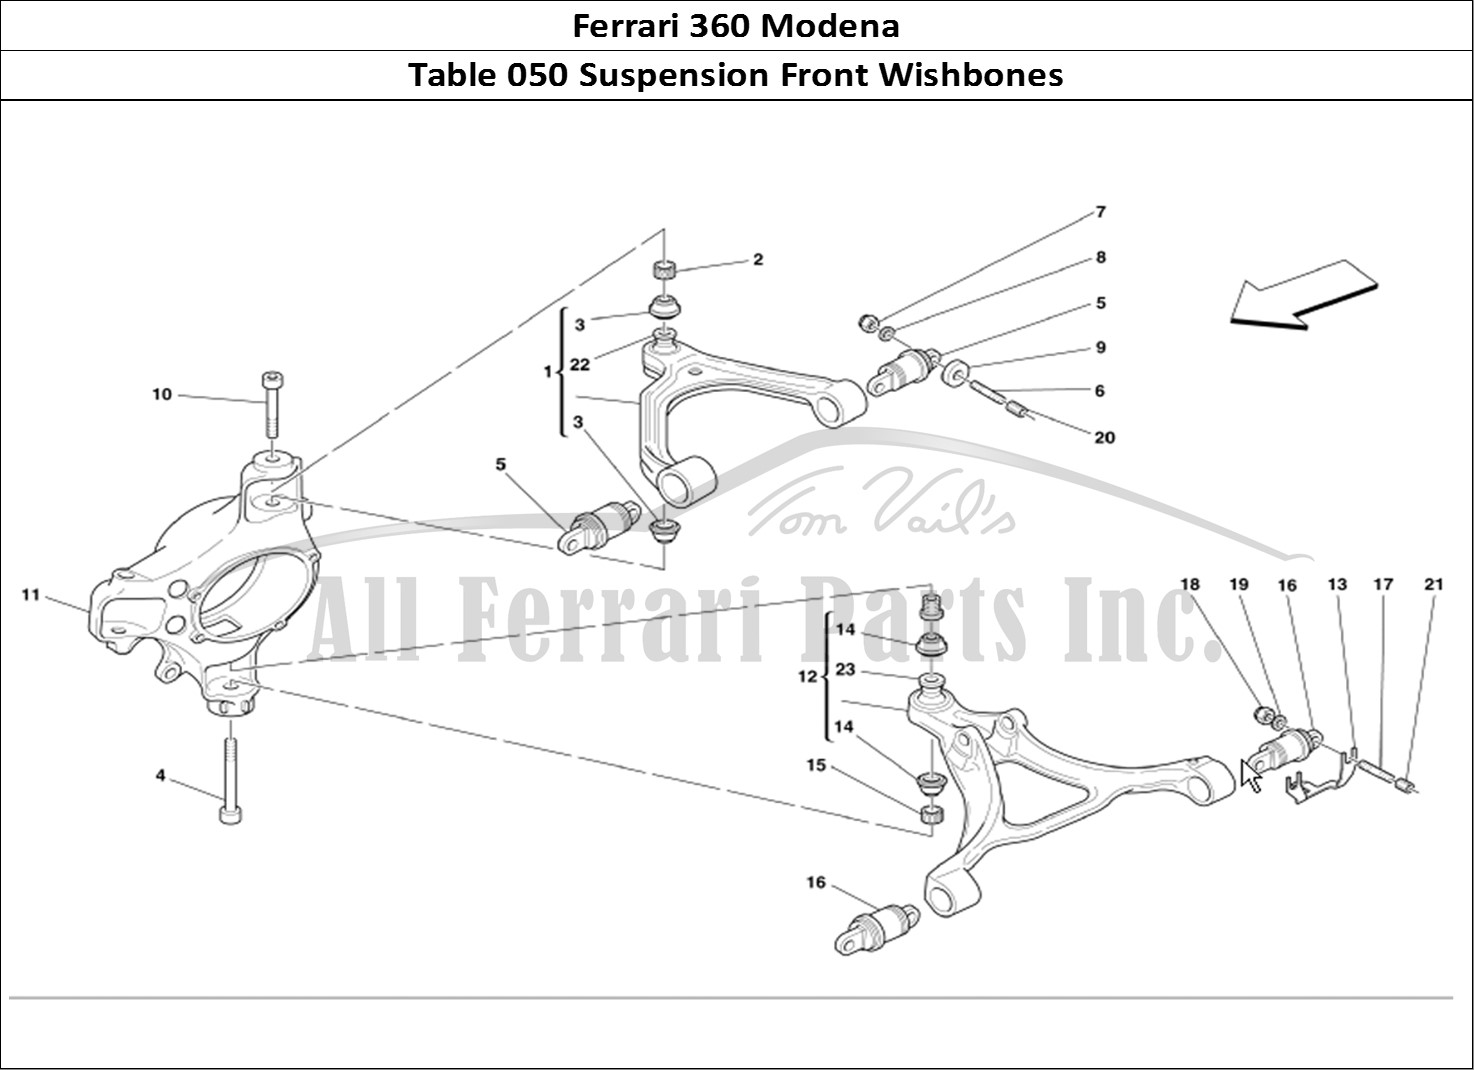 Ferrari Parts Ferrari 360 Modena Page 050 Front Suspension Wishbone